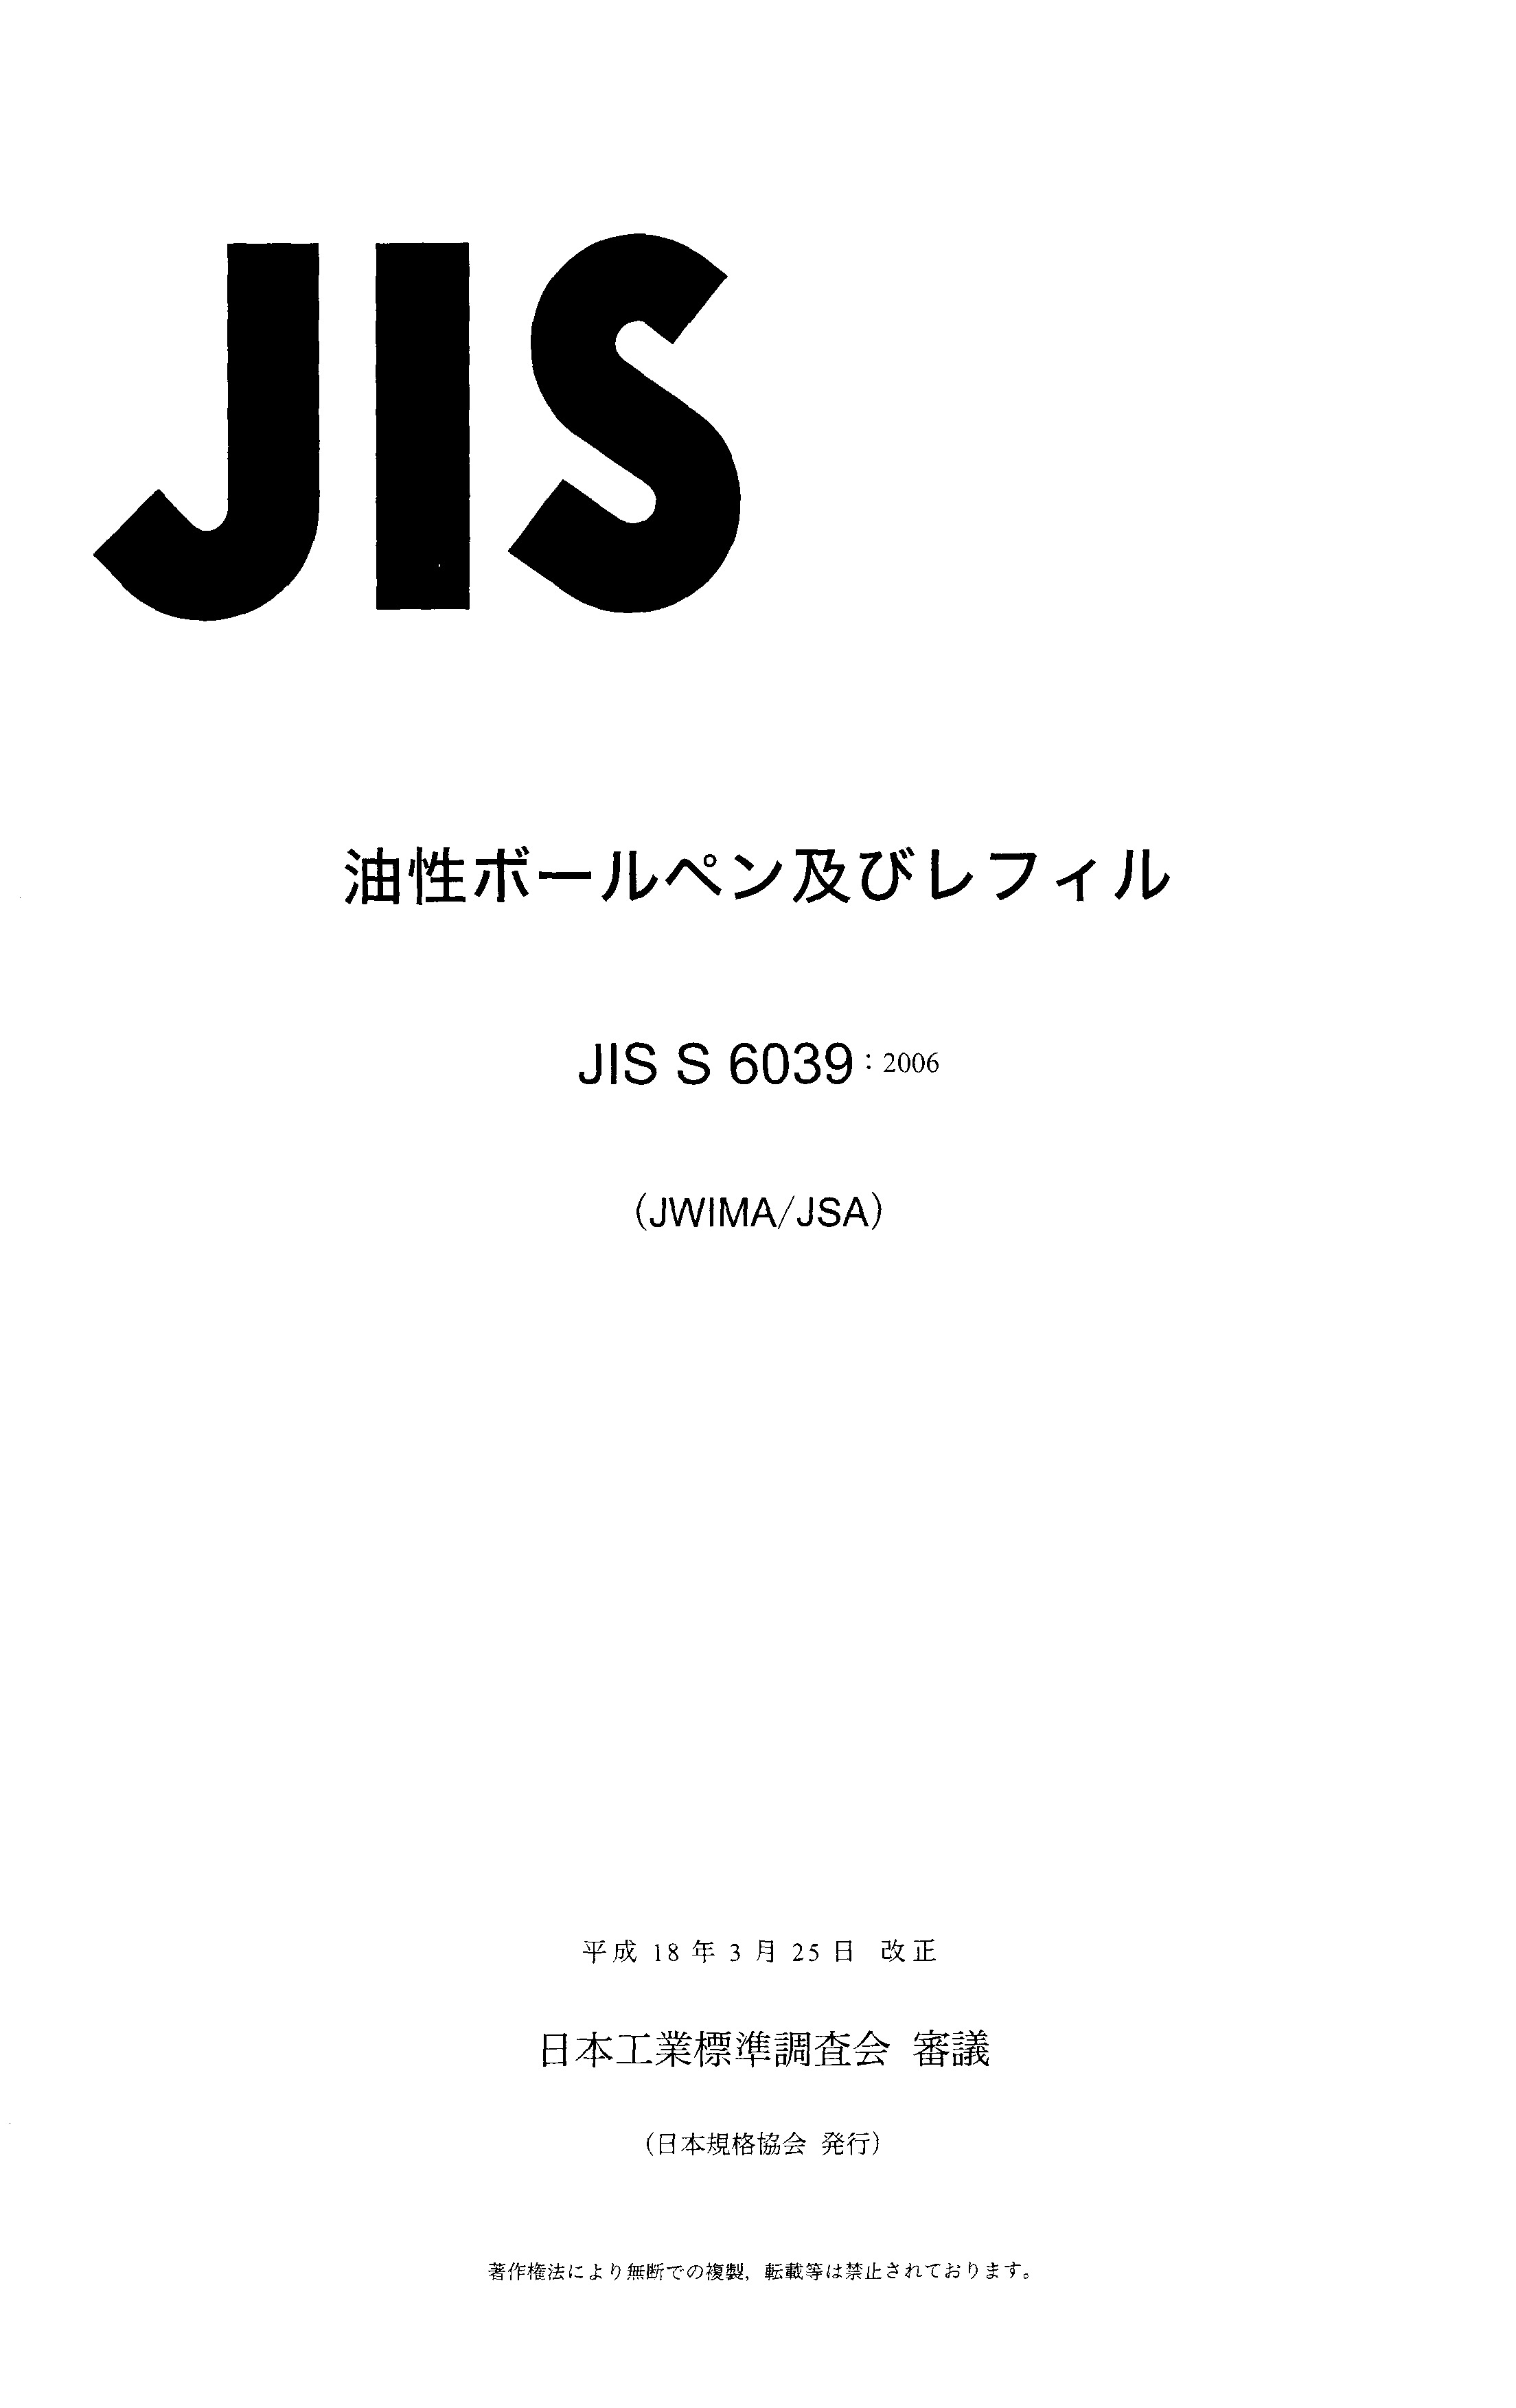 JIS S 6039:2006封面图